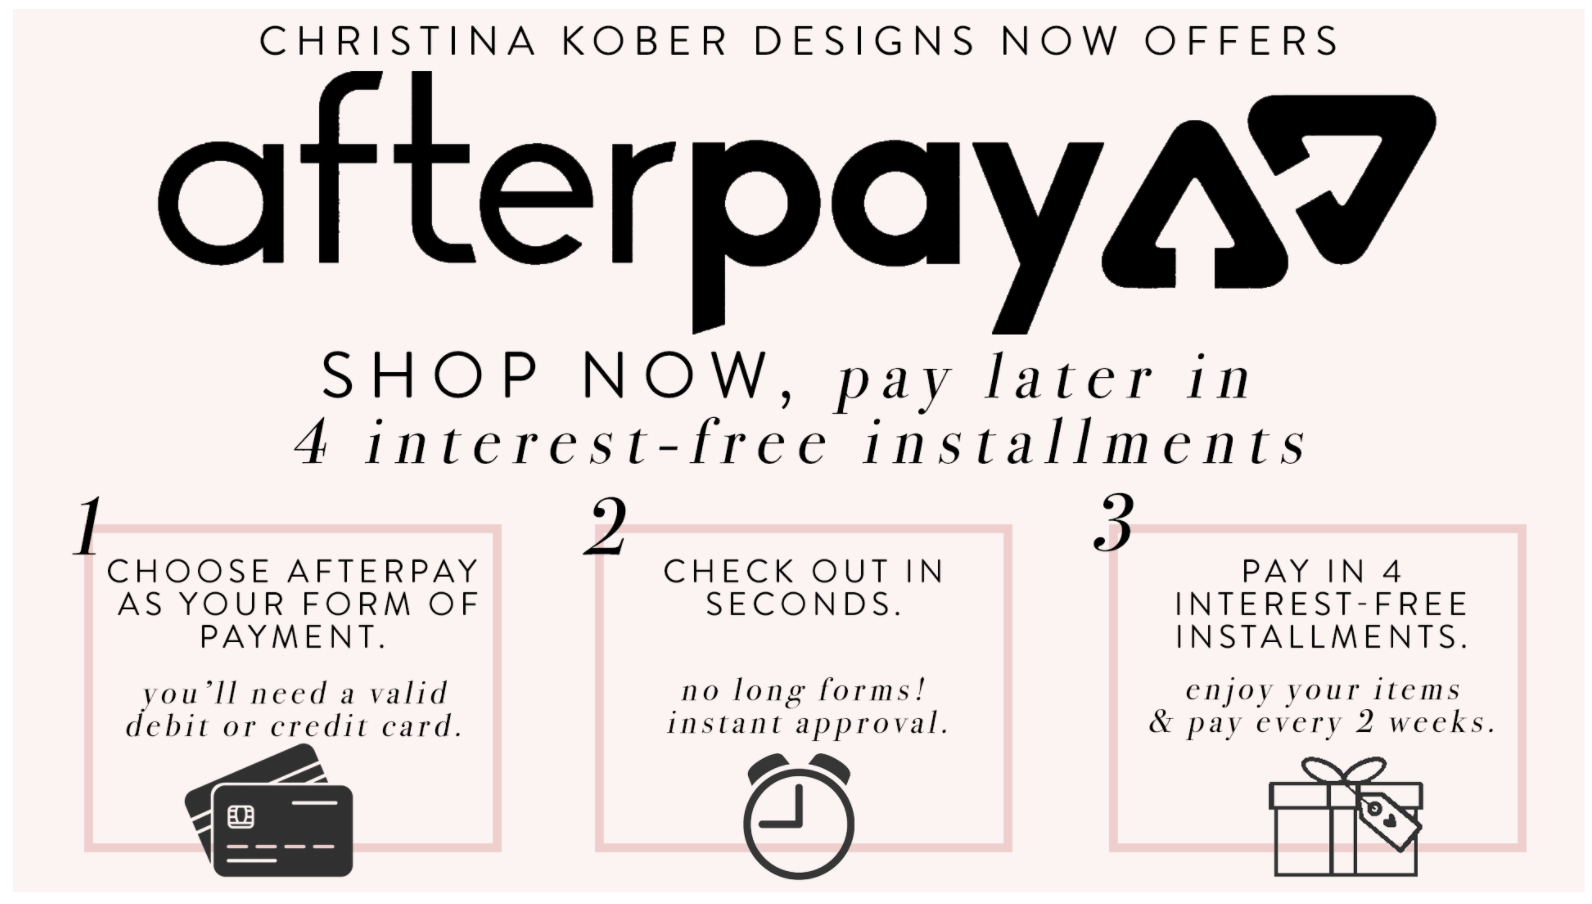 Christina Kober Designs Afterpay 